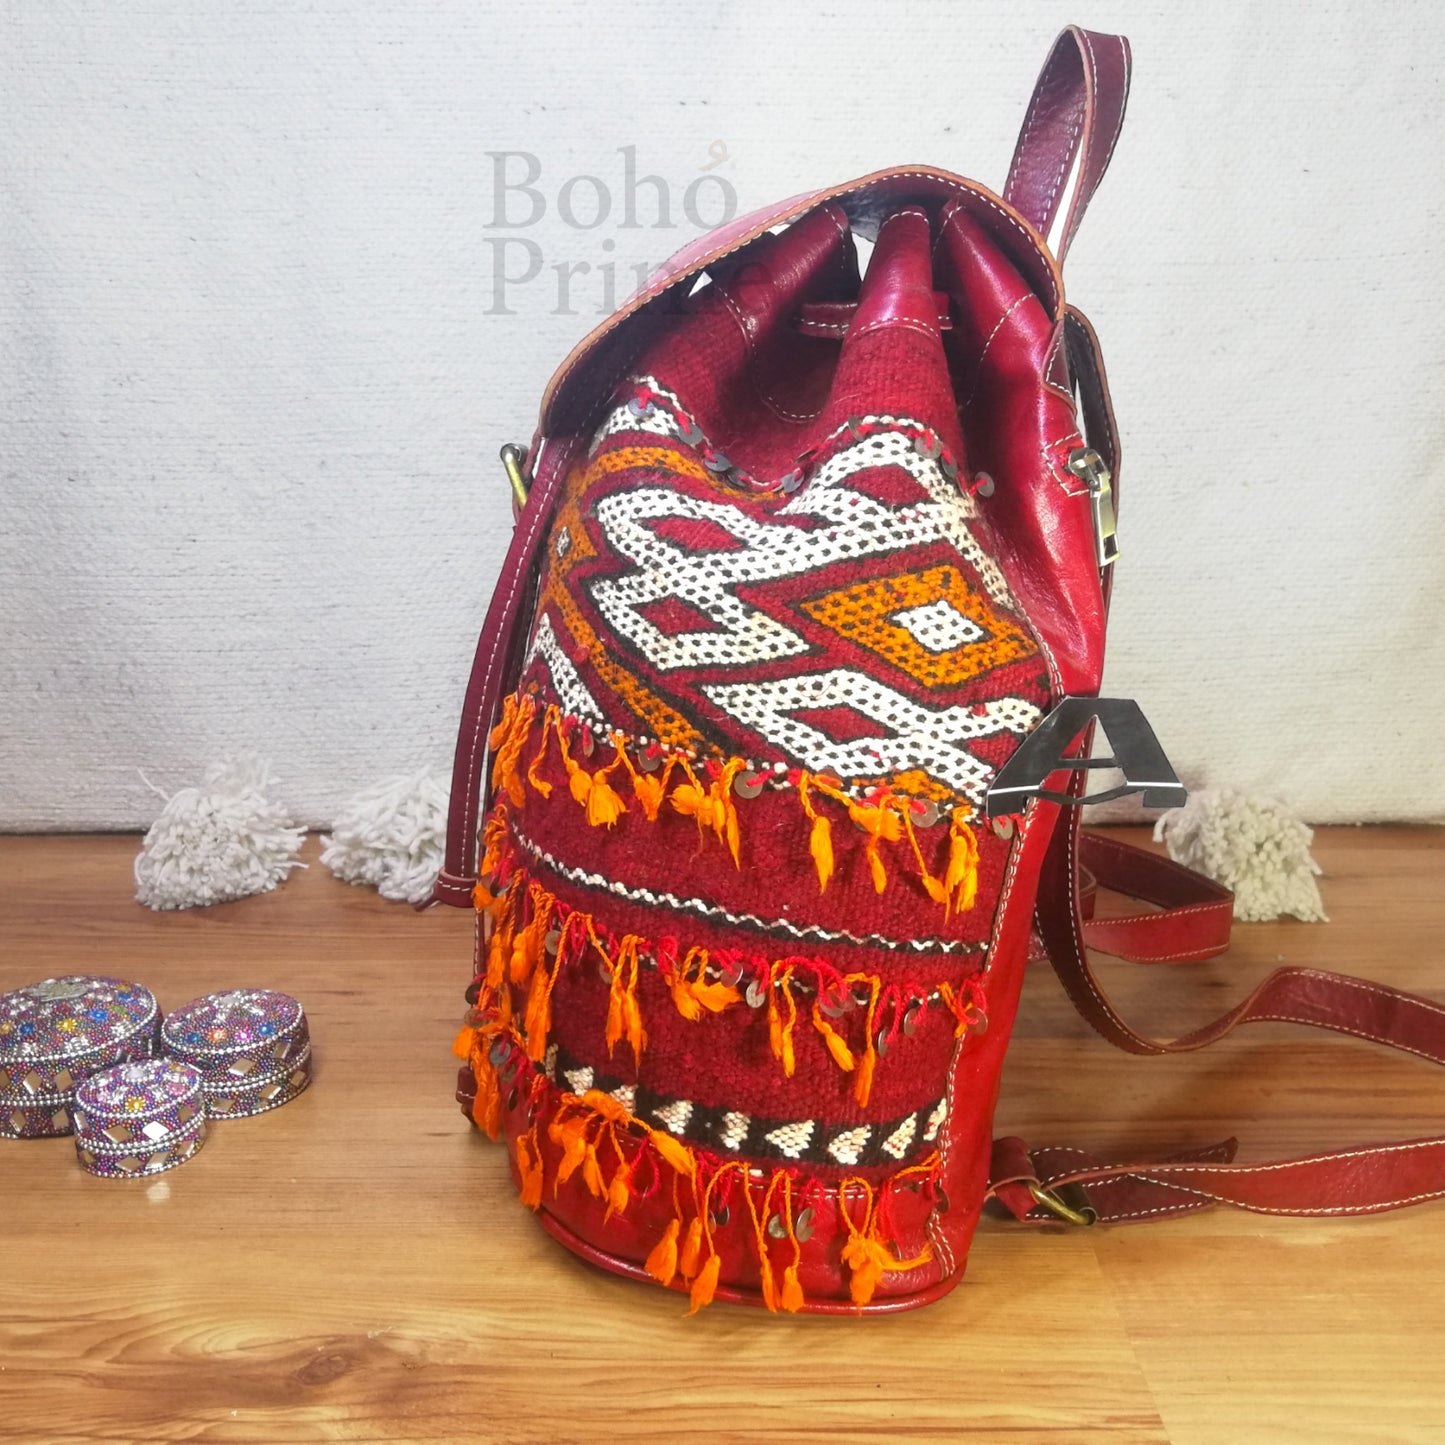 Handmade Moroccan Backpack Leather Woven Kilim Shoulder Bag, Travel Bag Ethnic, Berber Bohemian Backpack, Vintage Unique Stylish Handbag